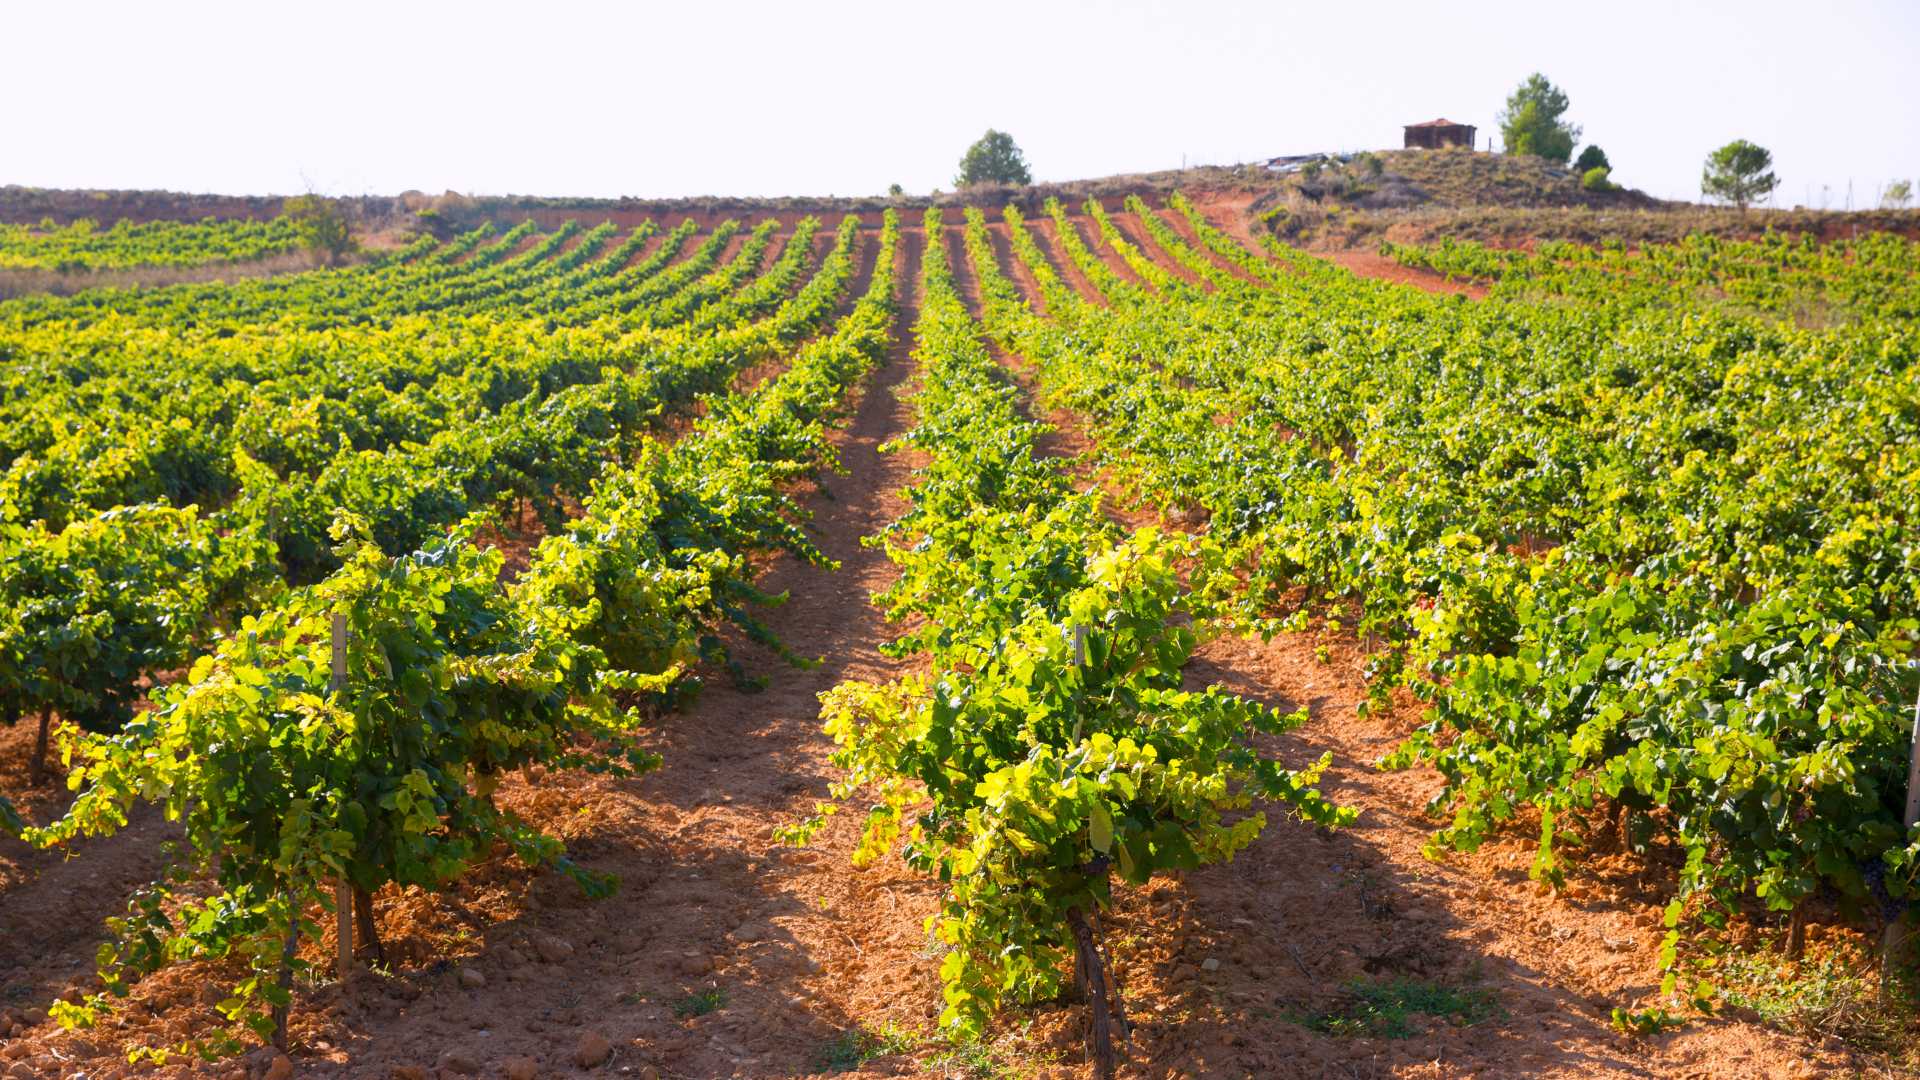 Weintourismus in der Region Valencia